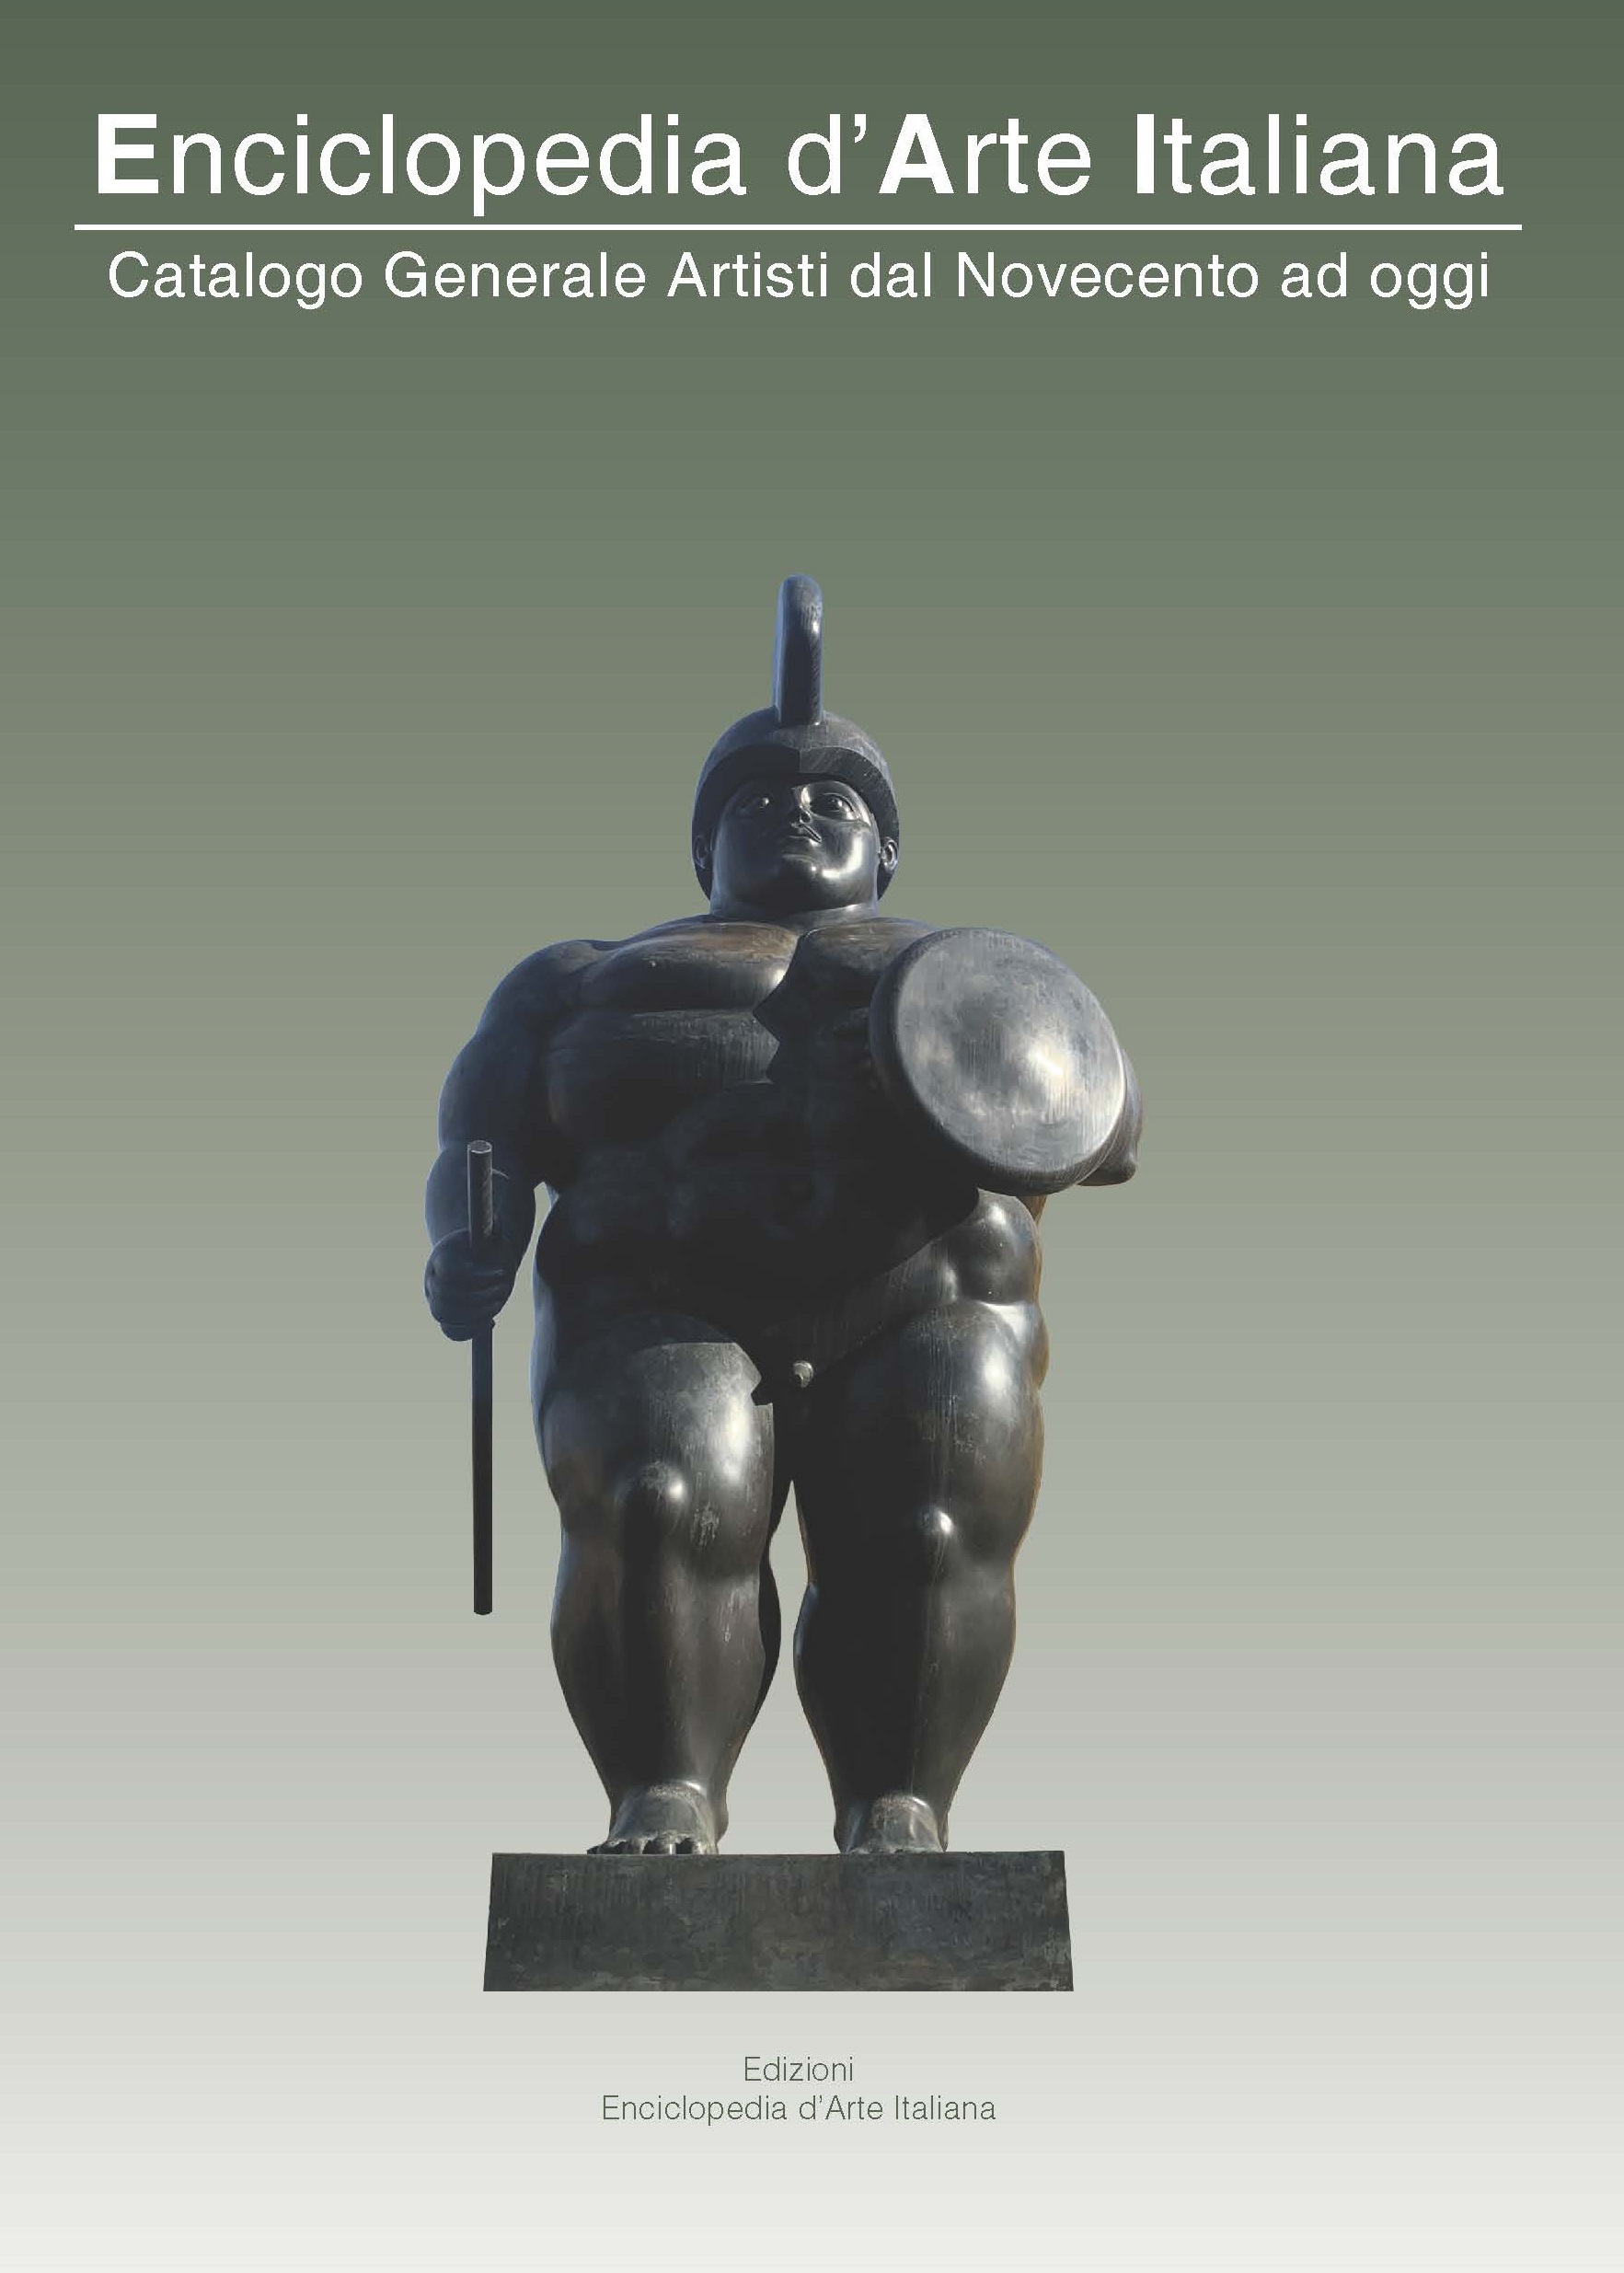 Enciclopedia d'Arte Italiana Volume 12- Copertina dedicata a Fernando Botero